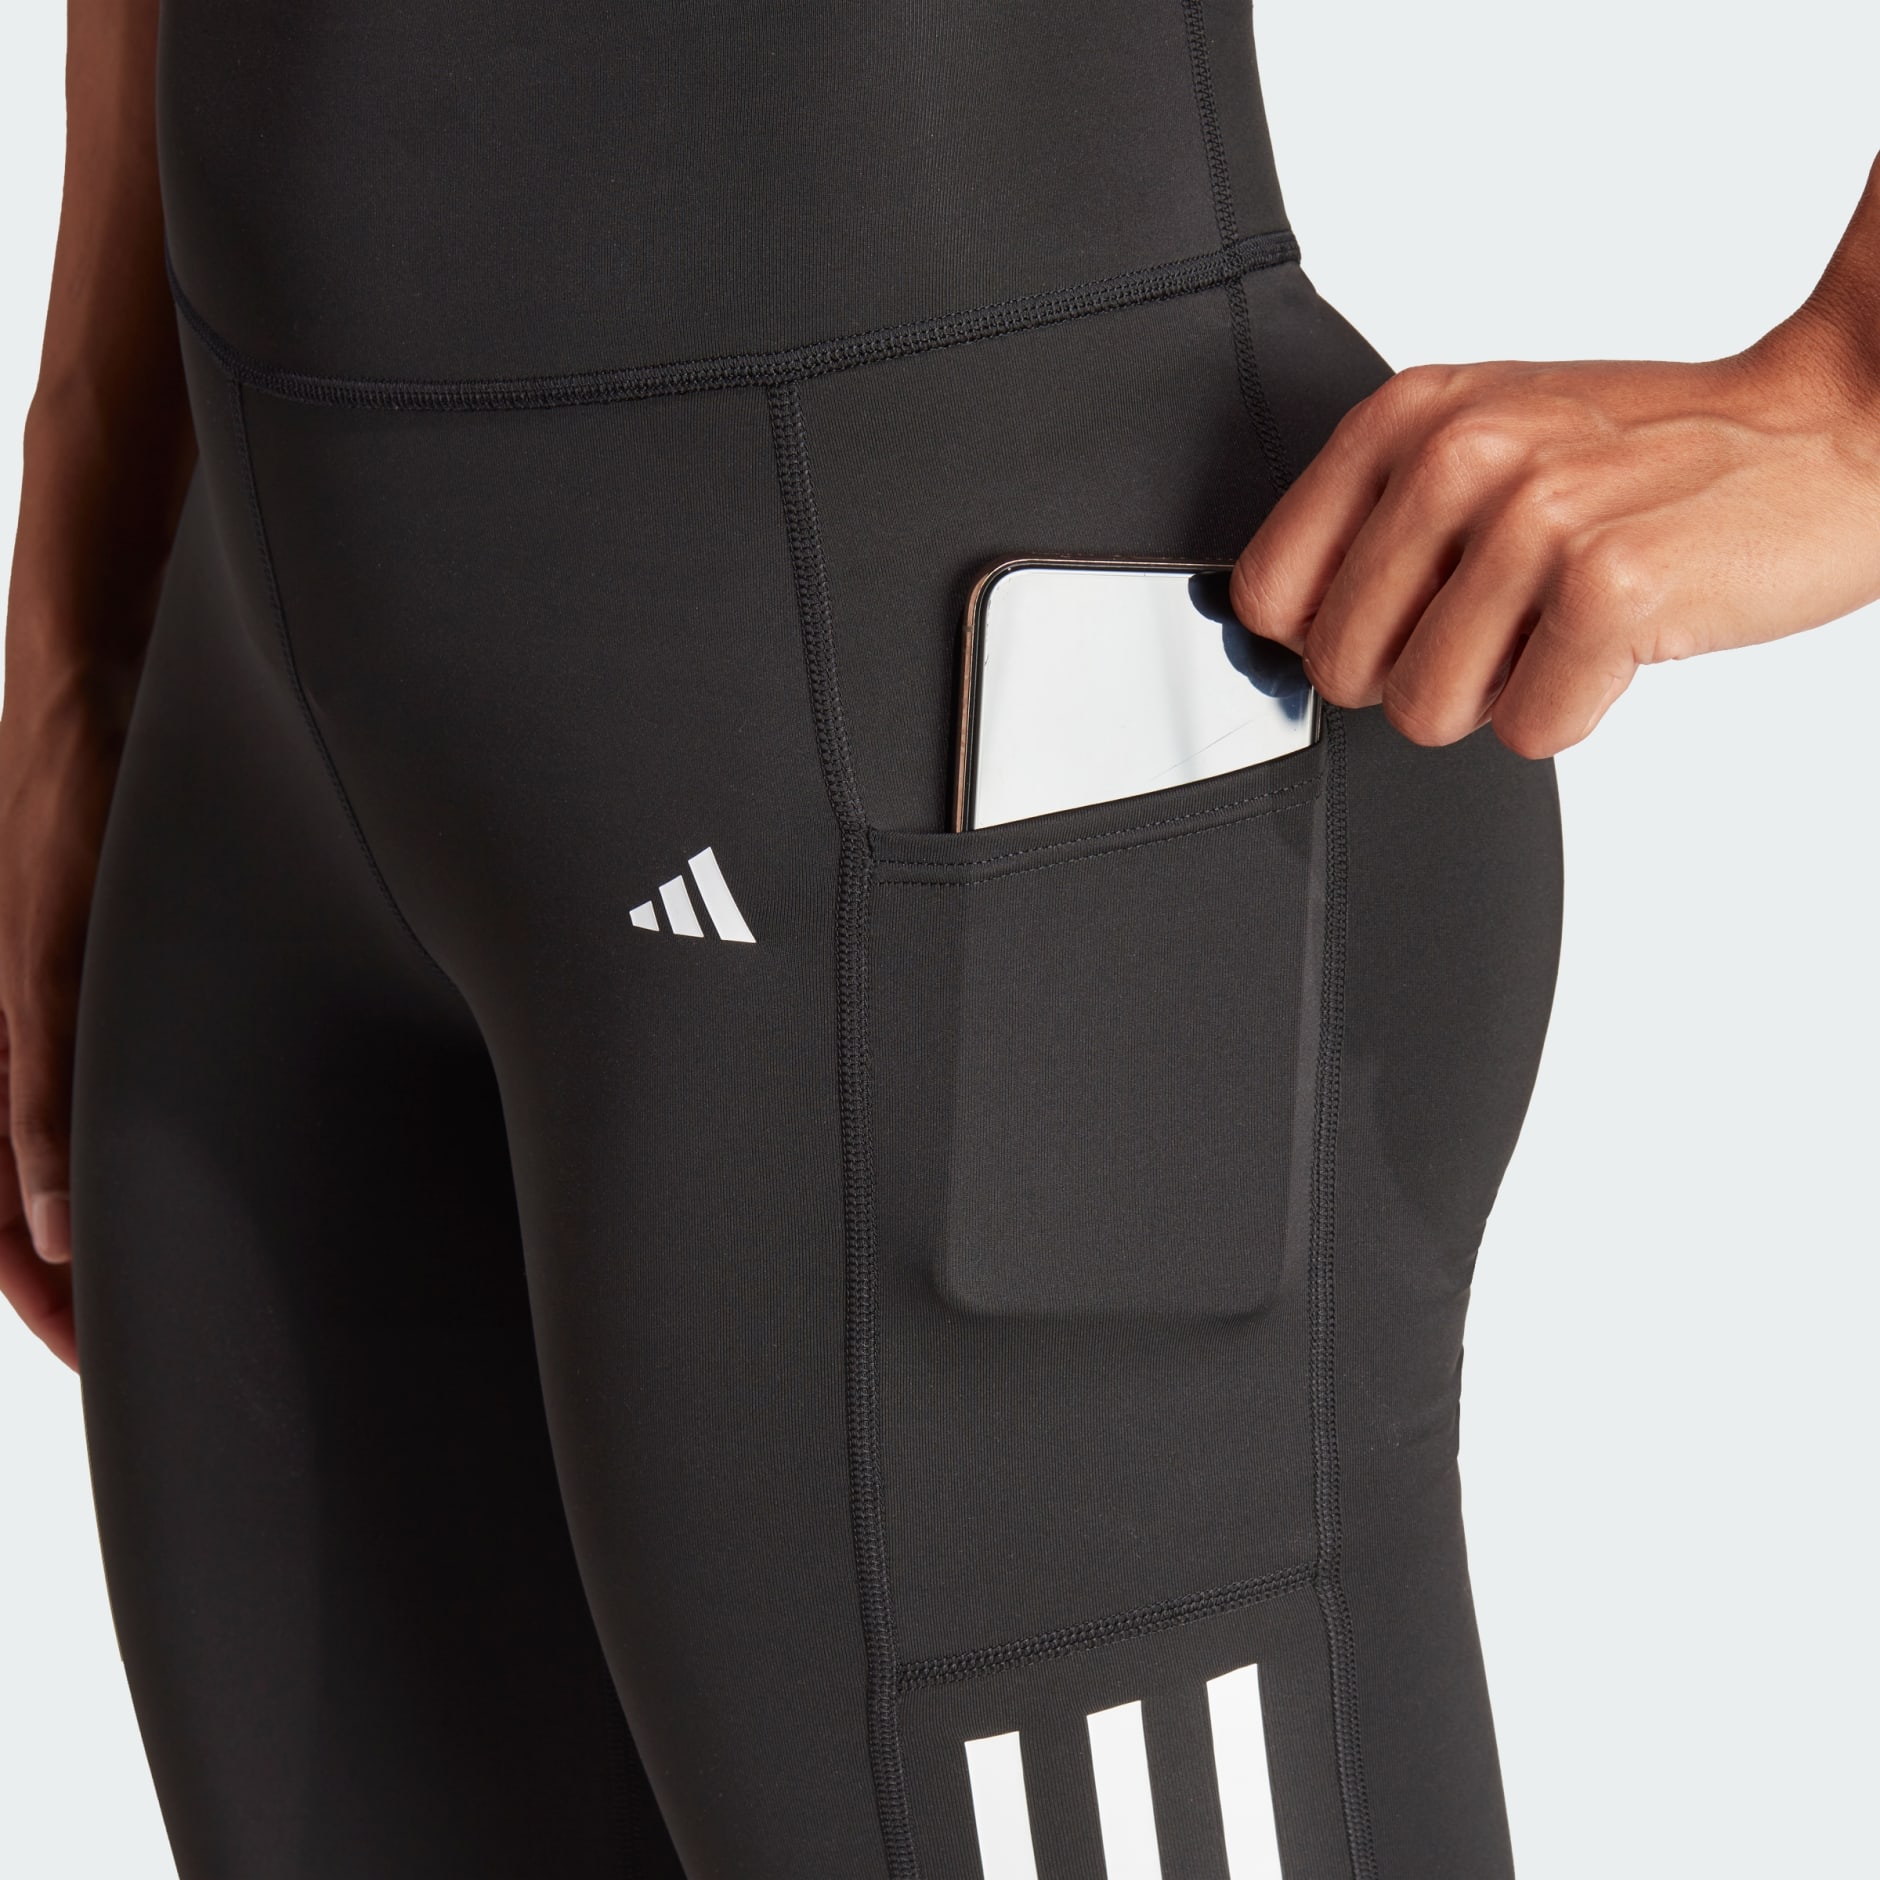 adidas Optime 3-Stripes Full-Length Leggings - Black